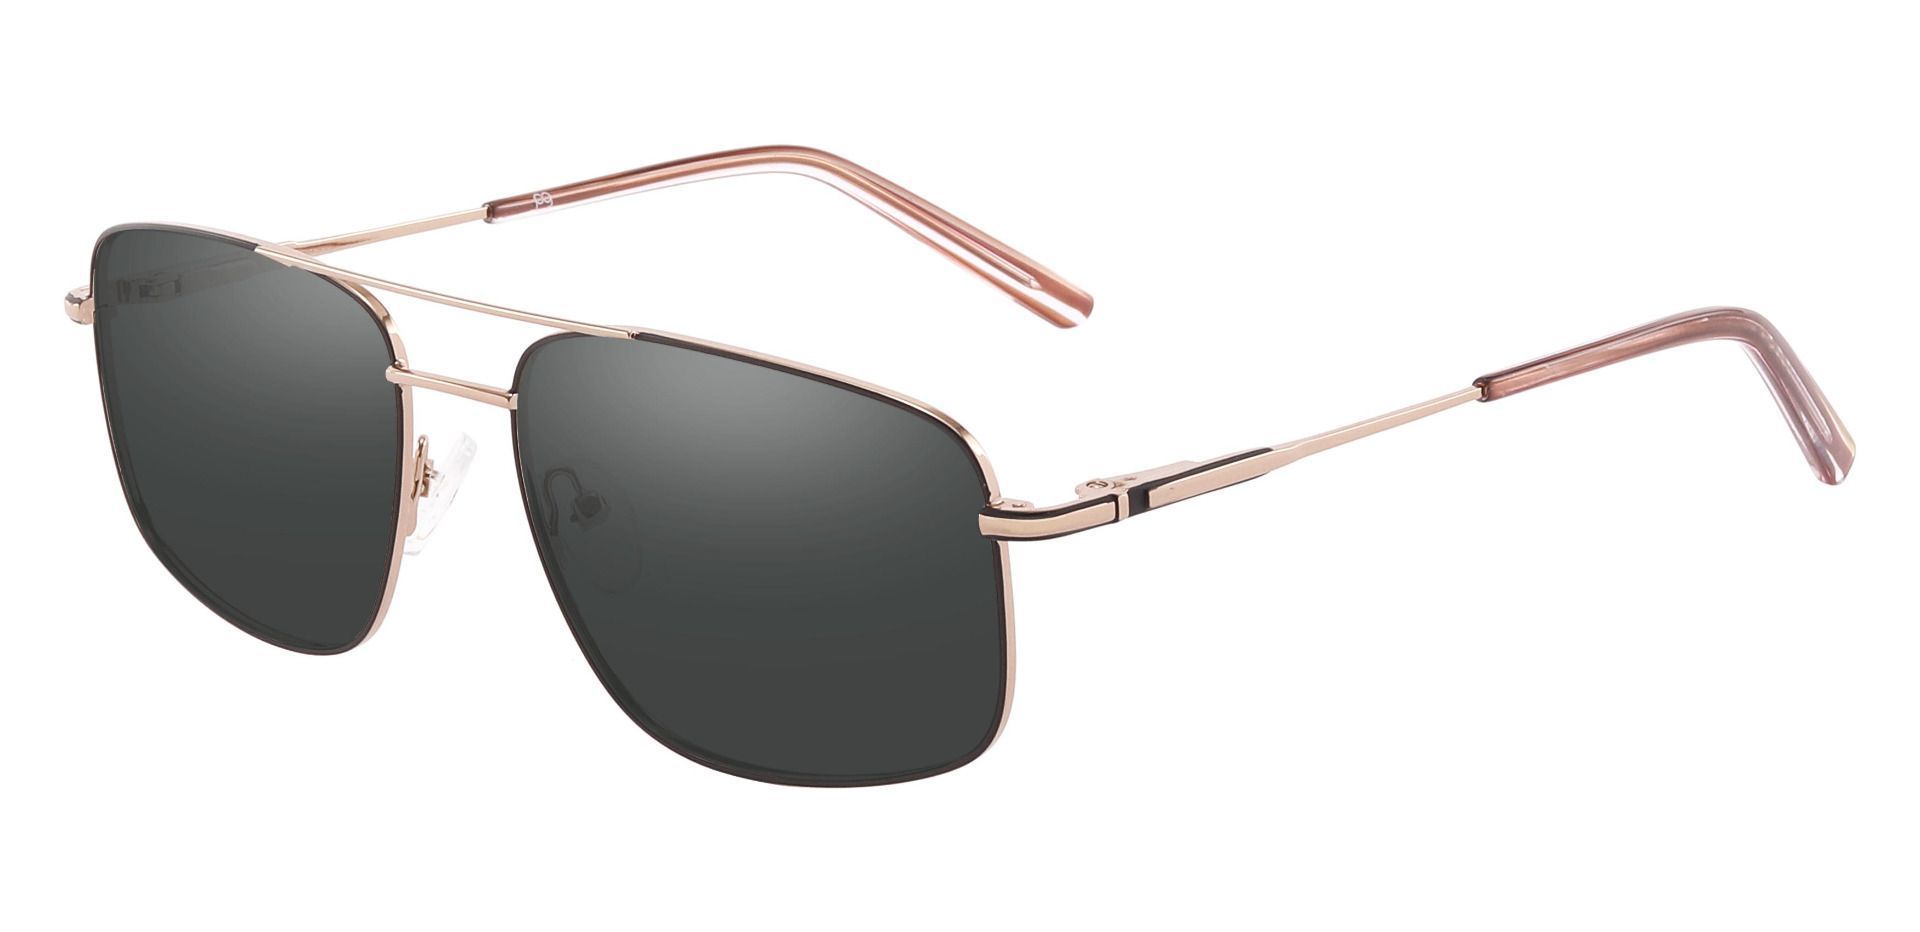 Turner Aviator Progressive Sunglasses - Gold Frame With Gray Lenses